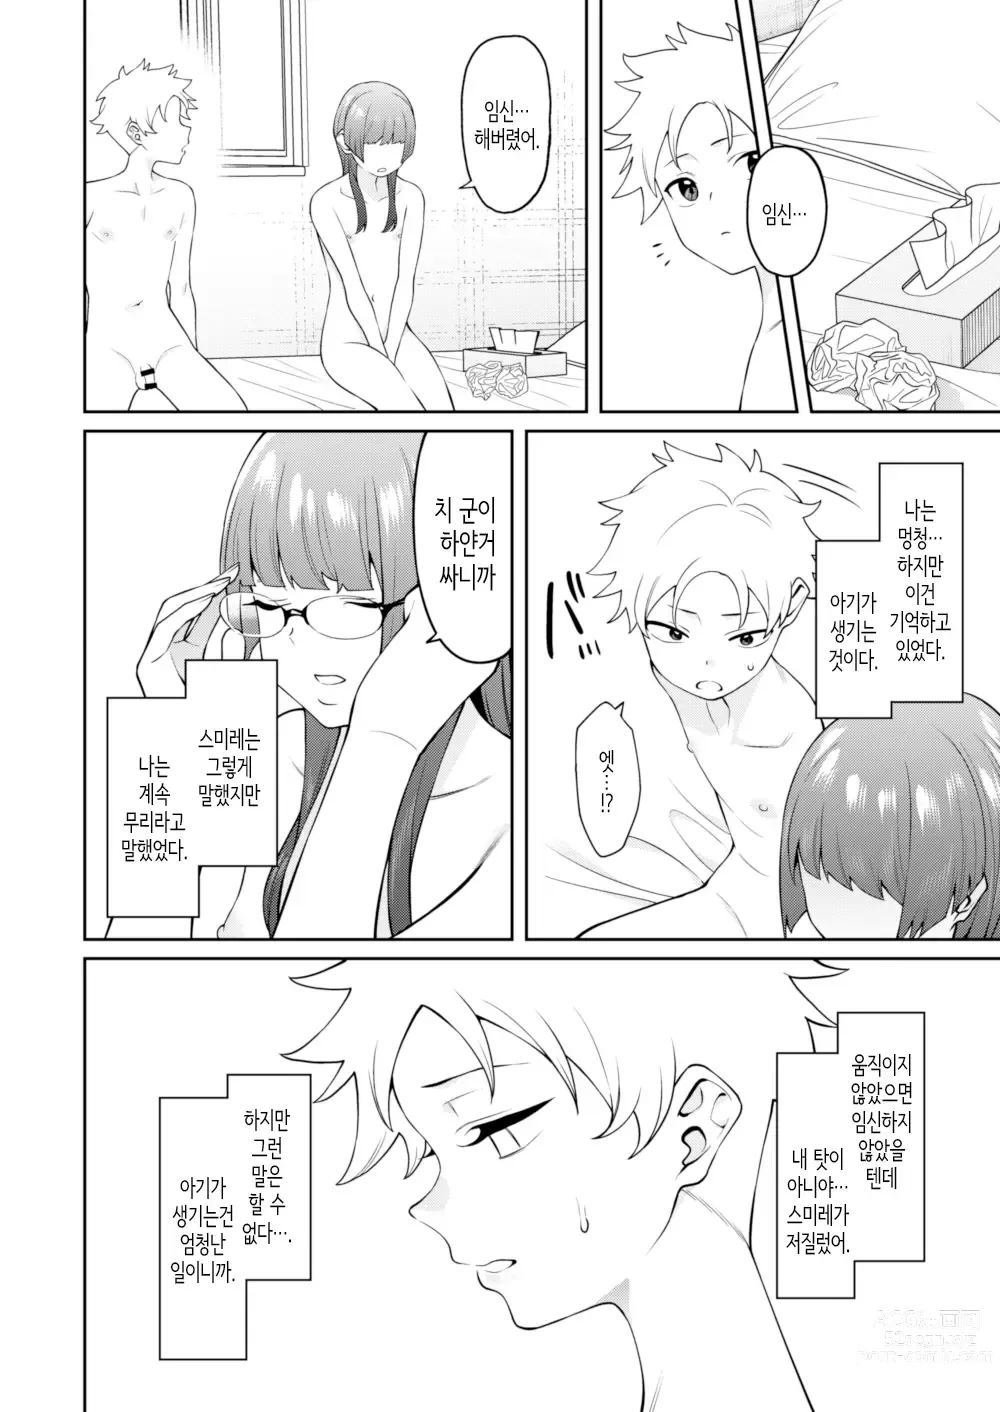 Page 27 of doujinshi 스미레 쨩은 머리가 좋다.